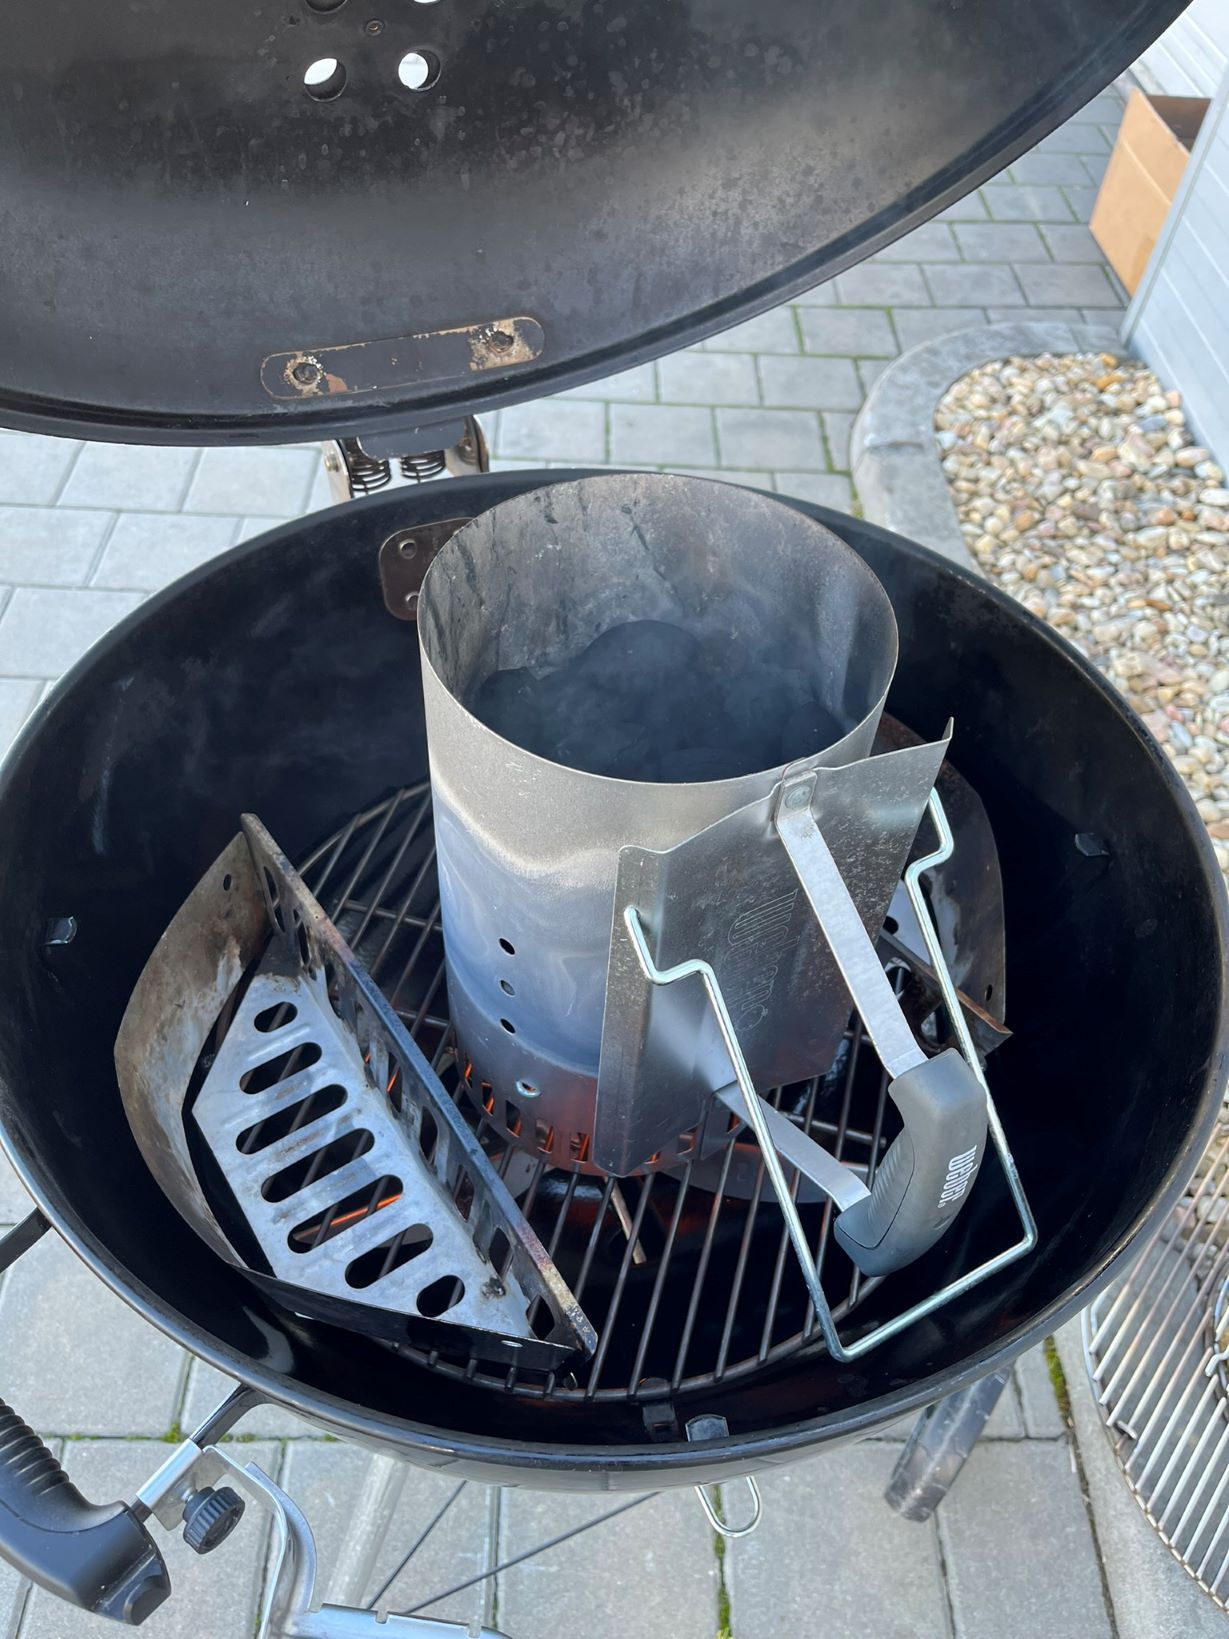 Zapalování briket v grilu v komínku